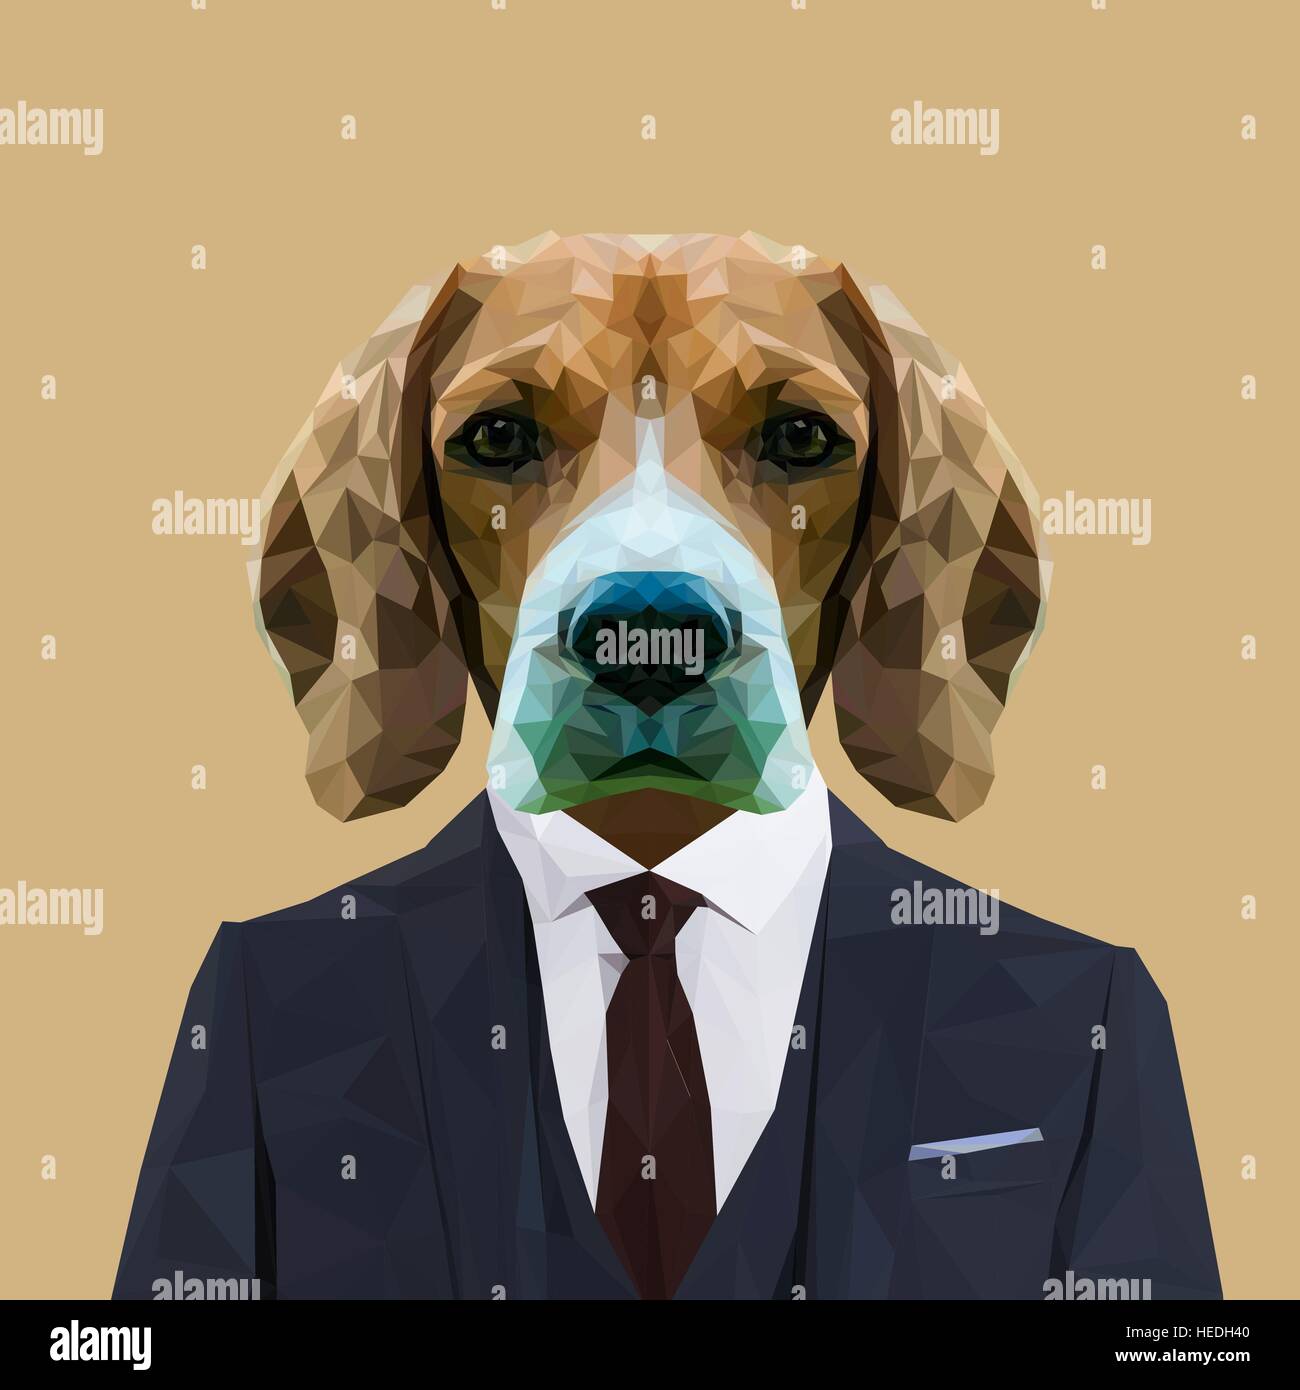 Beagle chien animal habillés en costume bleu marine avec cravate rouge. Homme d'affaires. Vector illustration. Illustration de Vecteur